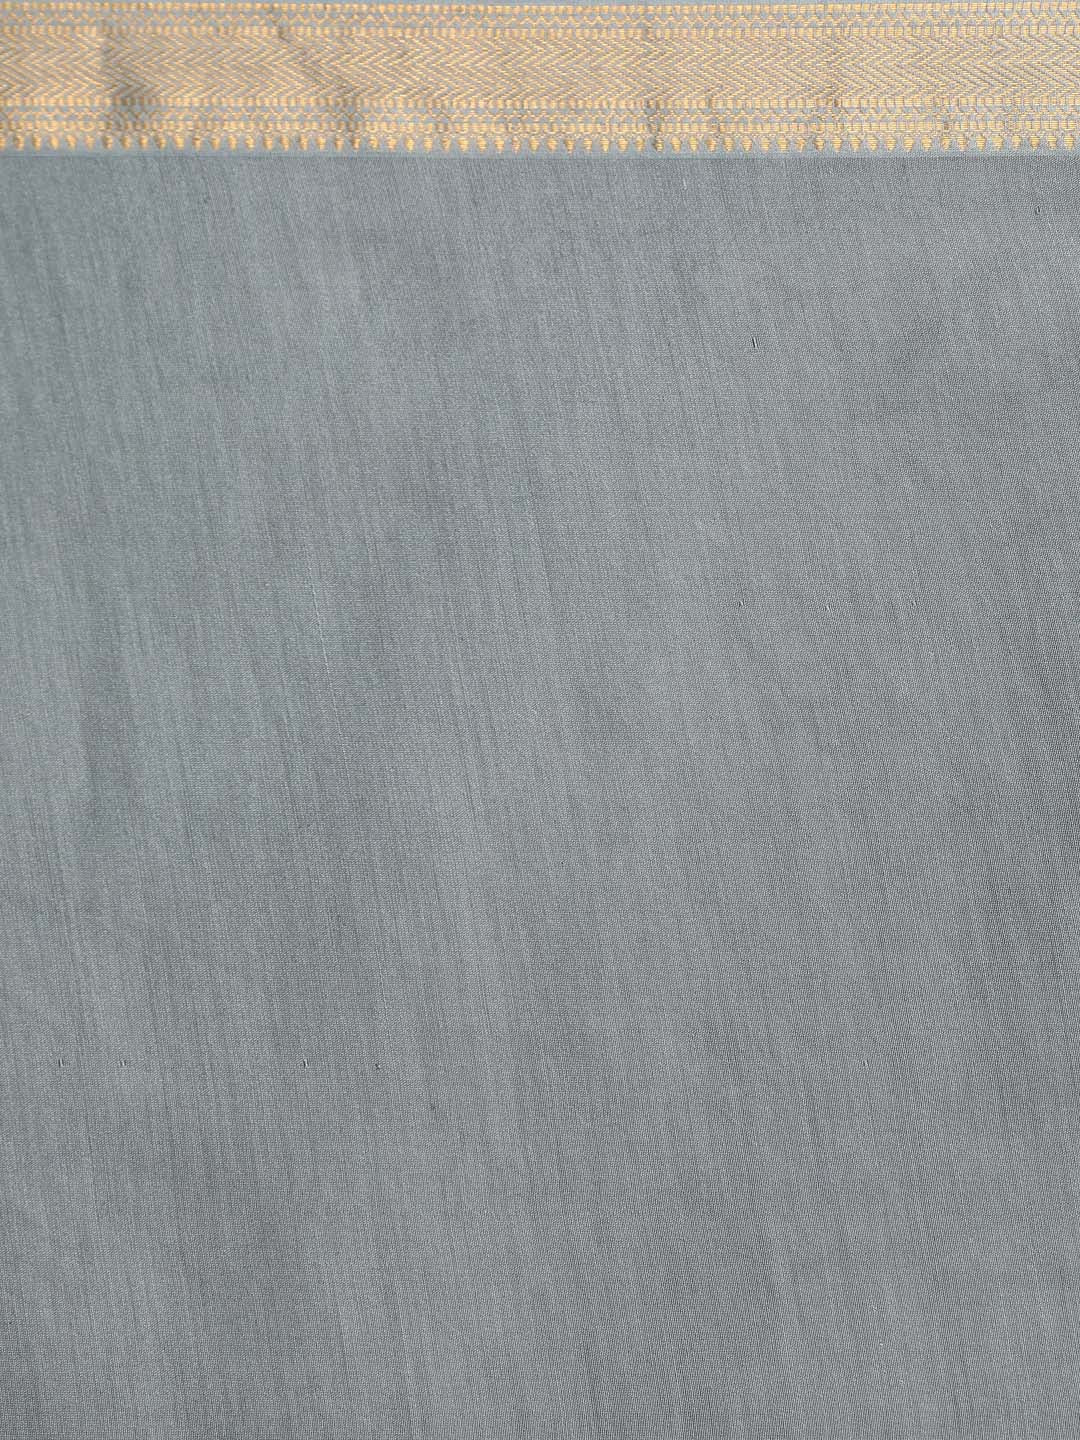 Indethnic Banarasi Grey Solid Work Wear Saree - Saree Detail View